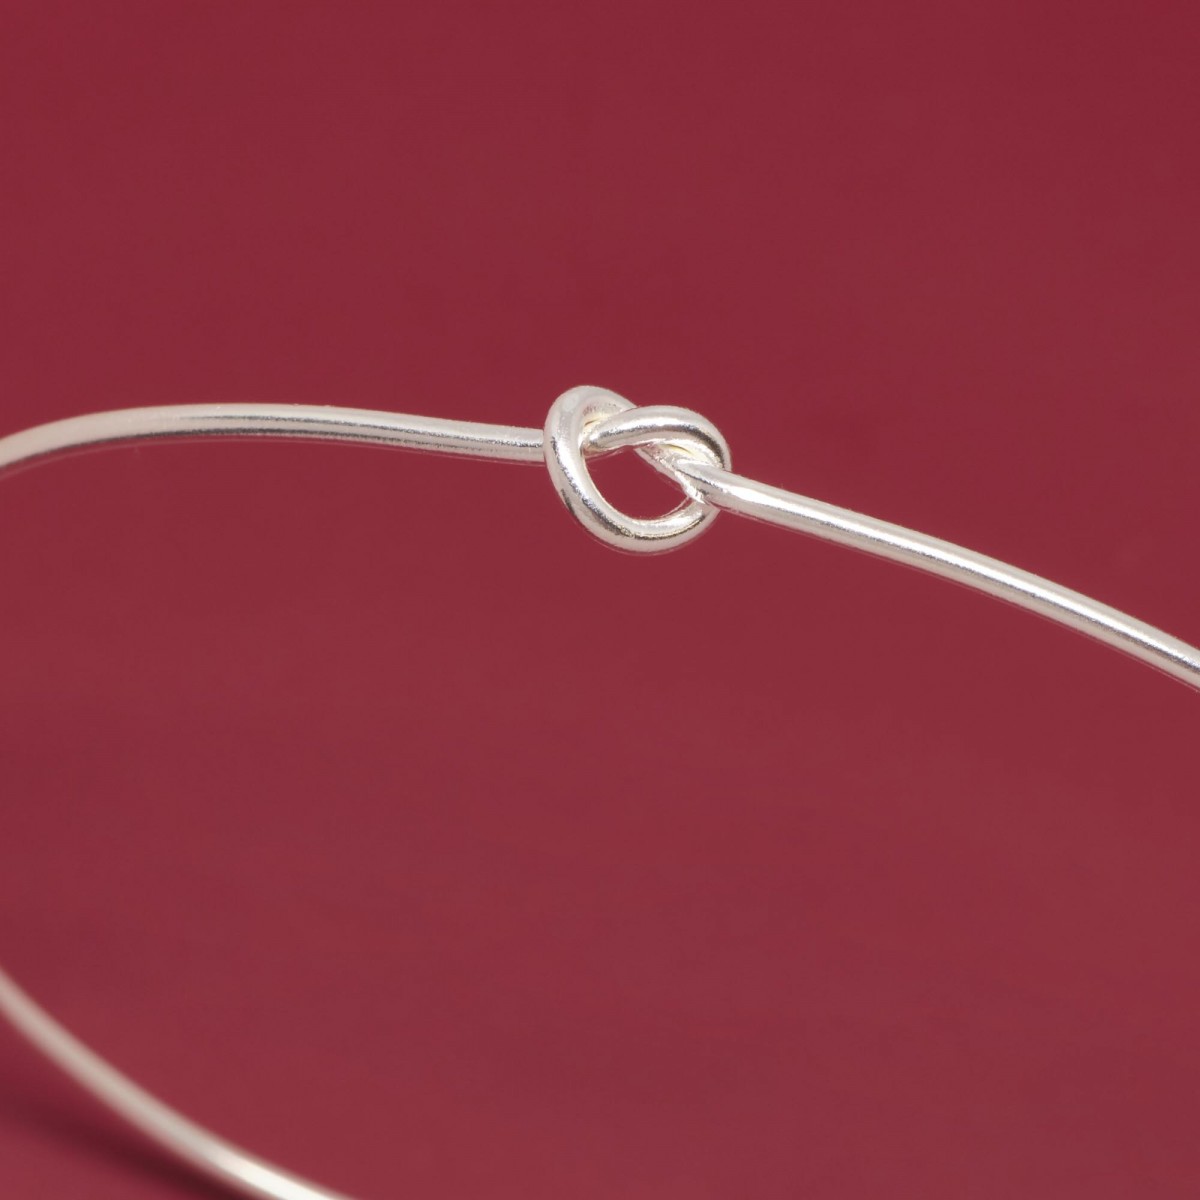 fejn jewelry - Armcuff 'knot'